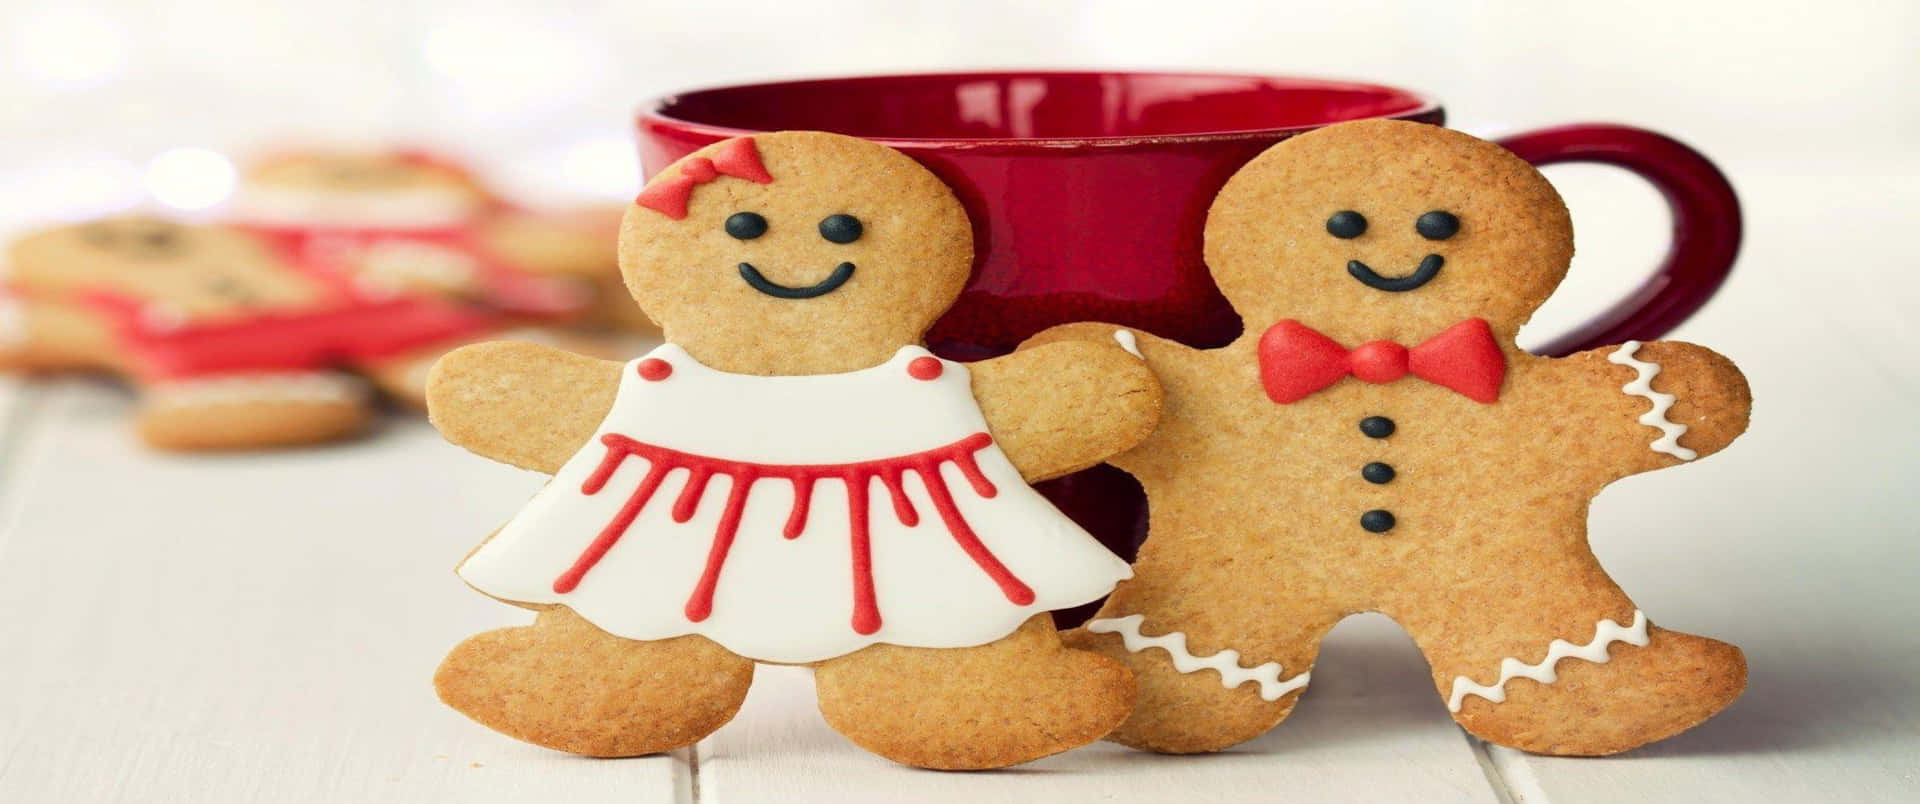 Dejlige gingerbread 3440x1440p cookies baggrund til skrivebord